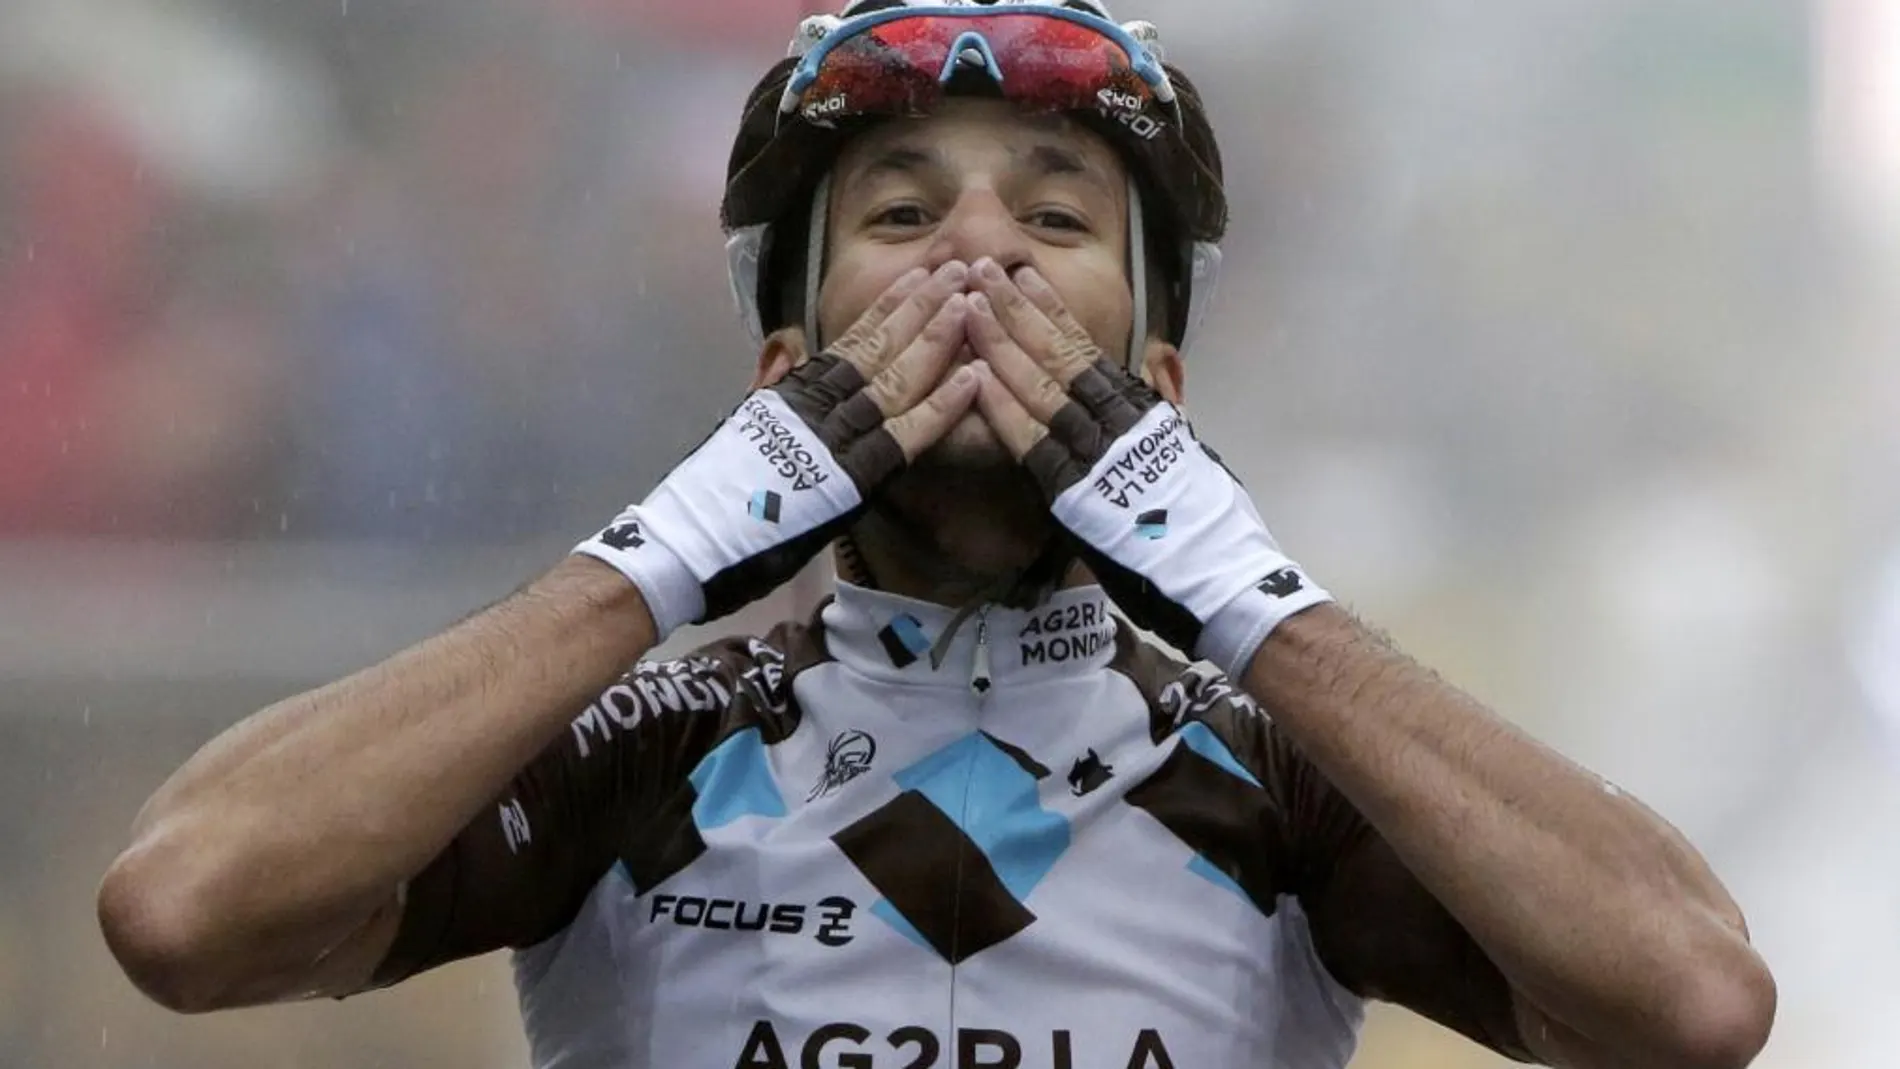 Blel Kadri firmó hoy la primera victoria gala en el Tour de Francia.